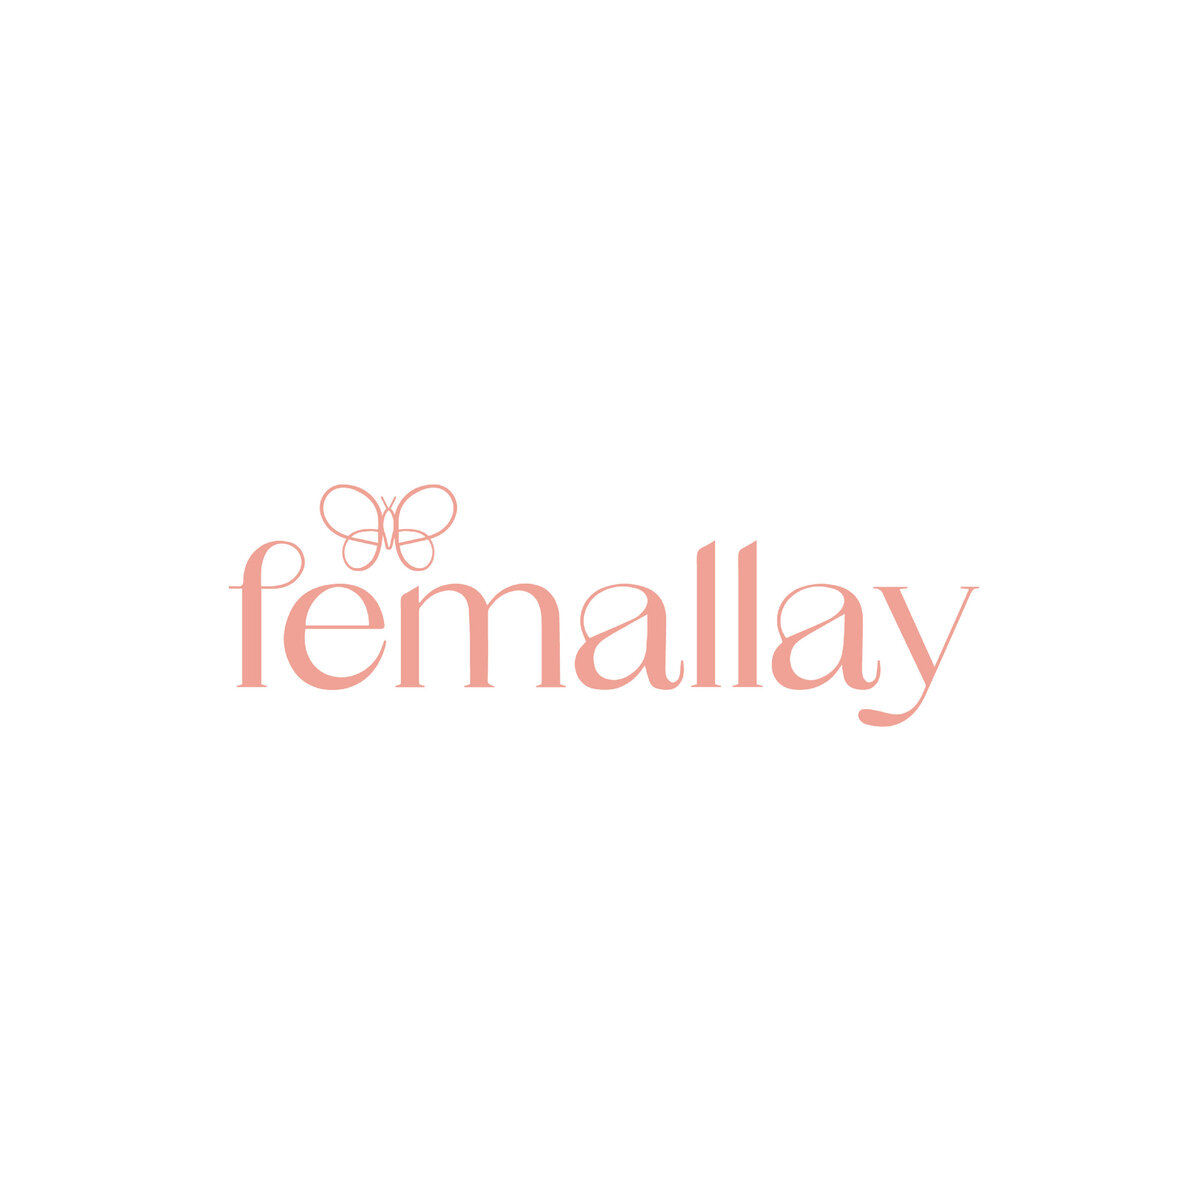 Femallay-01